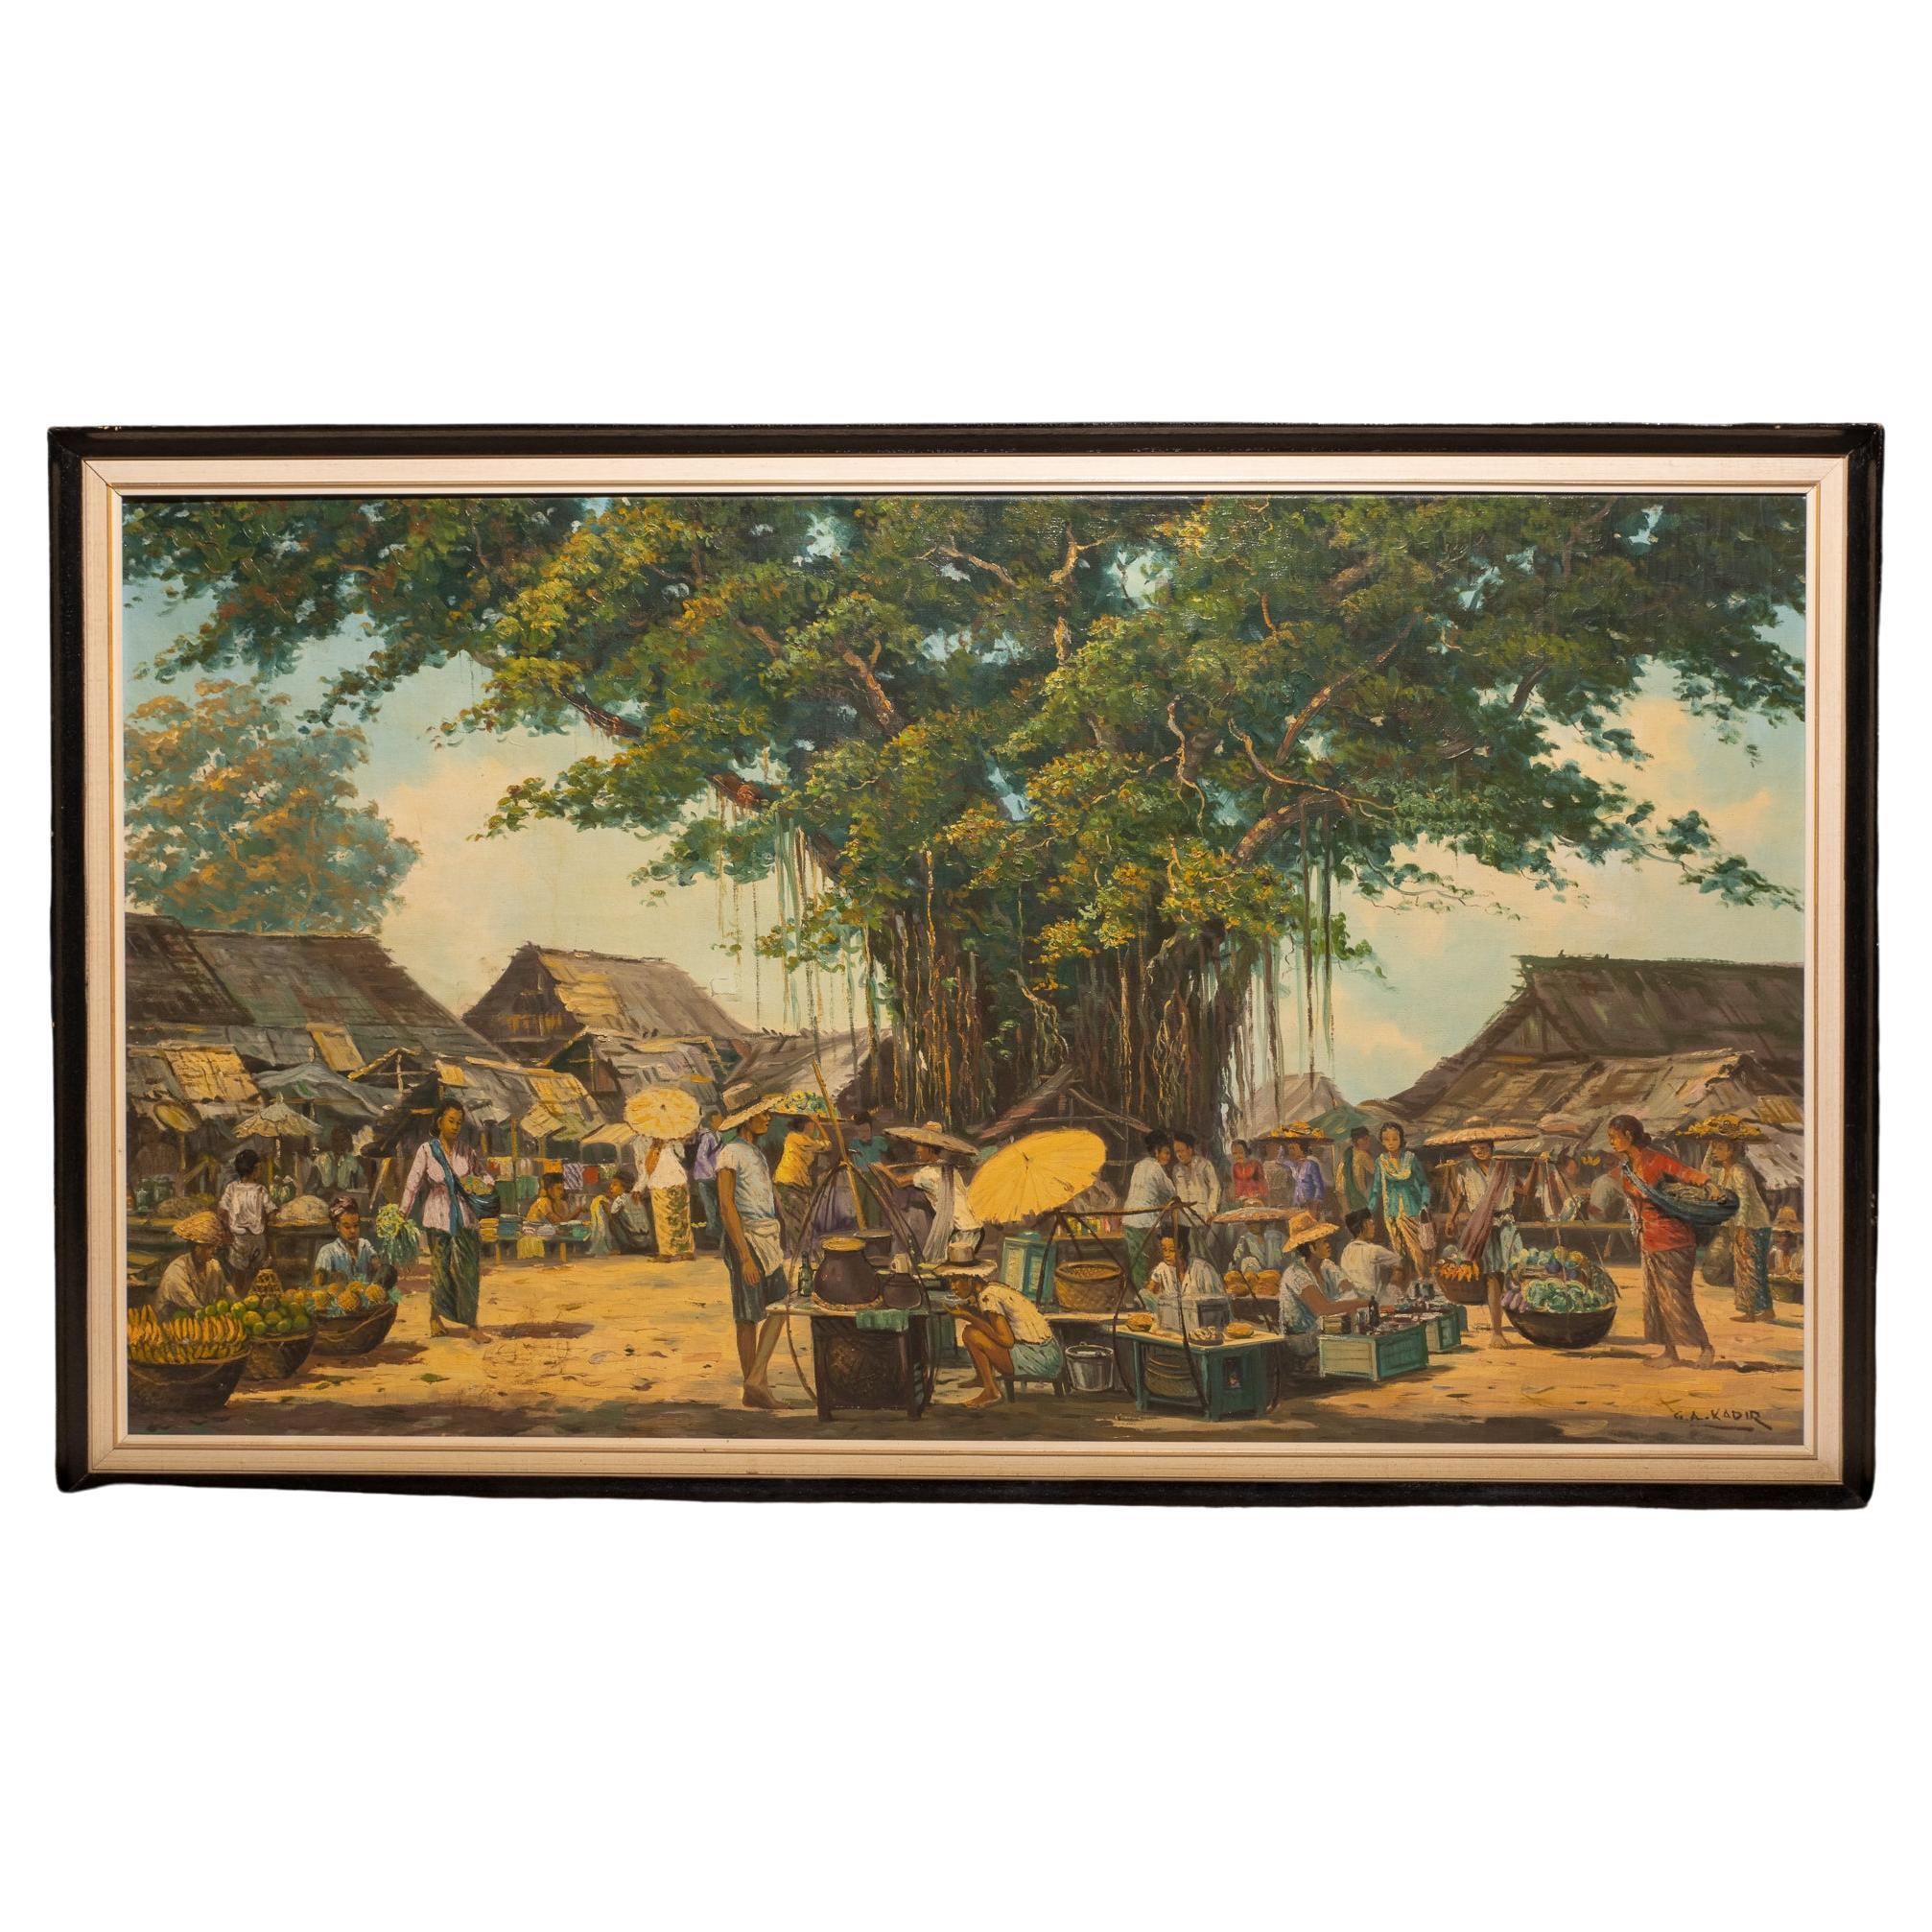 Original-Ölgemälde des indonesischen impressionistischen Malers G.A. Kadir: wurde von dem Dänen van Russel (1898 - 1975) zum Maler ausgebildet und war in der ersten Hälfte des 20. Jahrhunderts in Bogor (Westjava) tätig. Signiert unten rechts: 